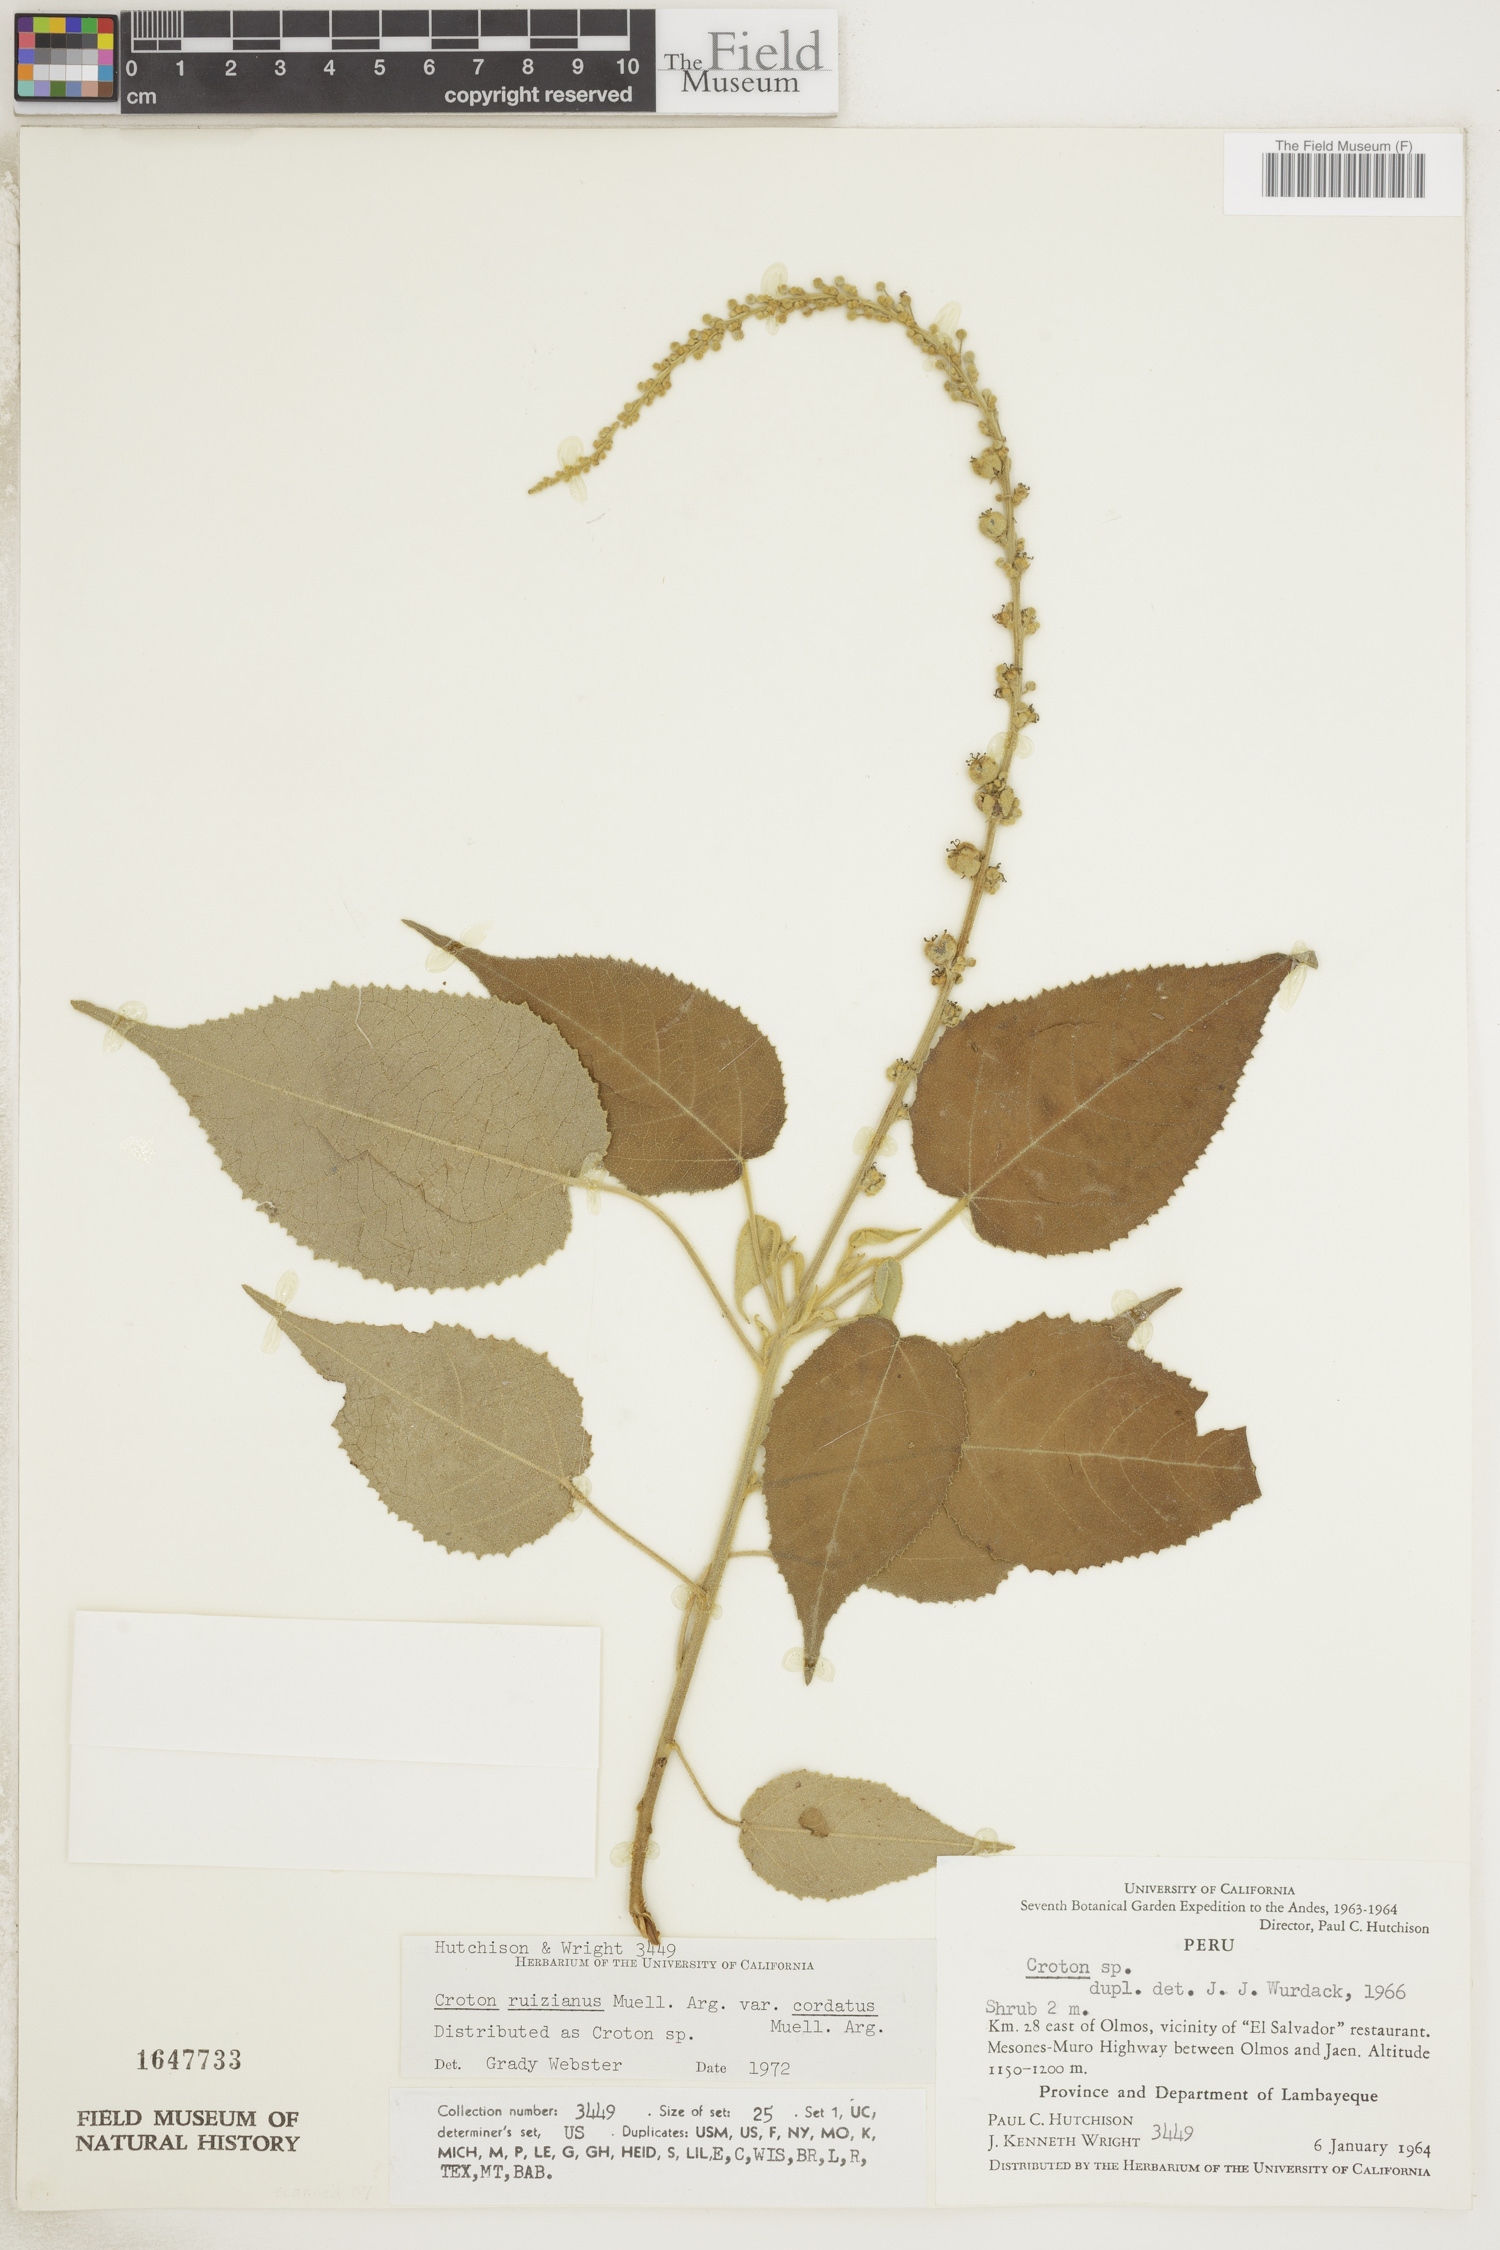 Croton ruizianus image